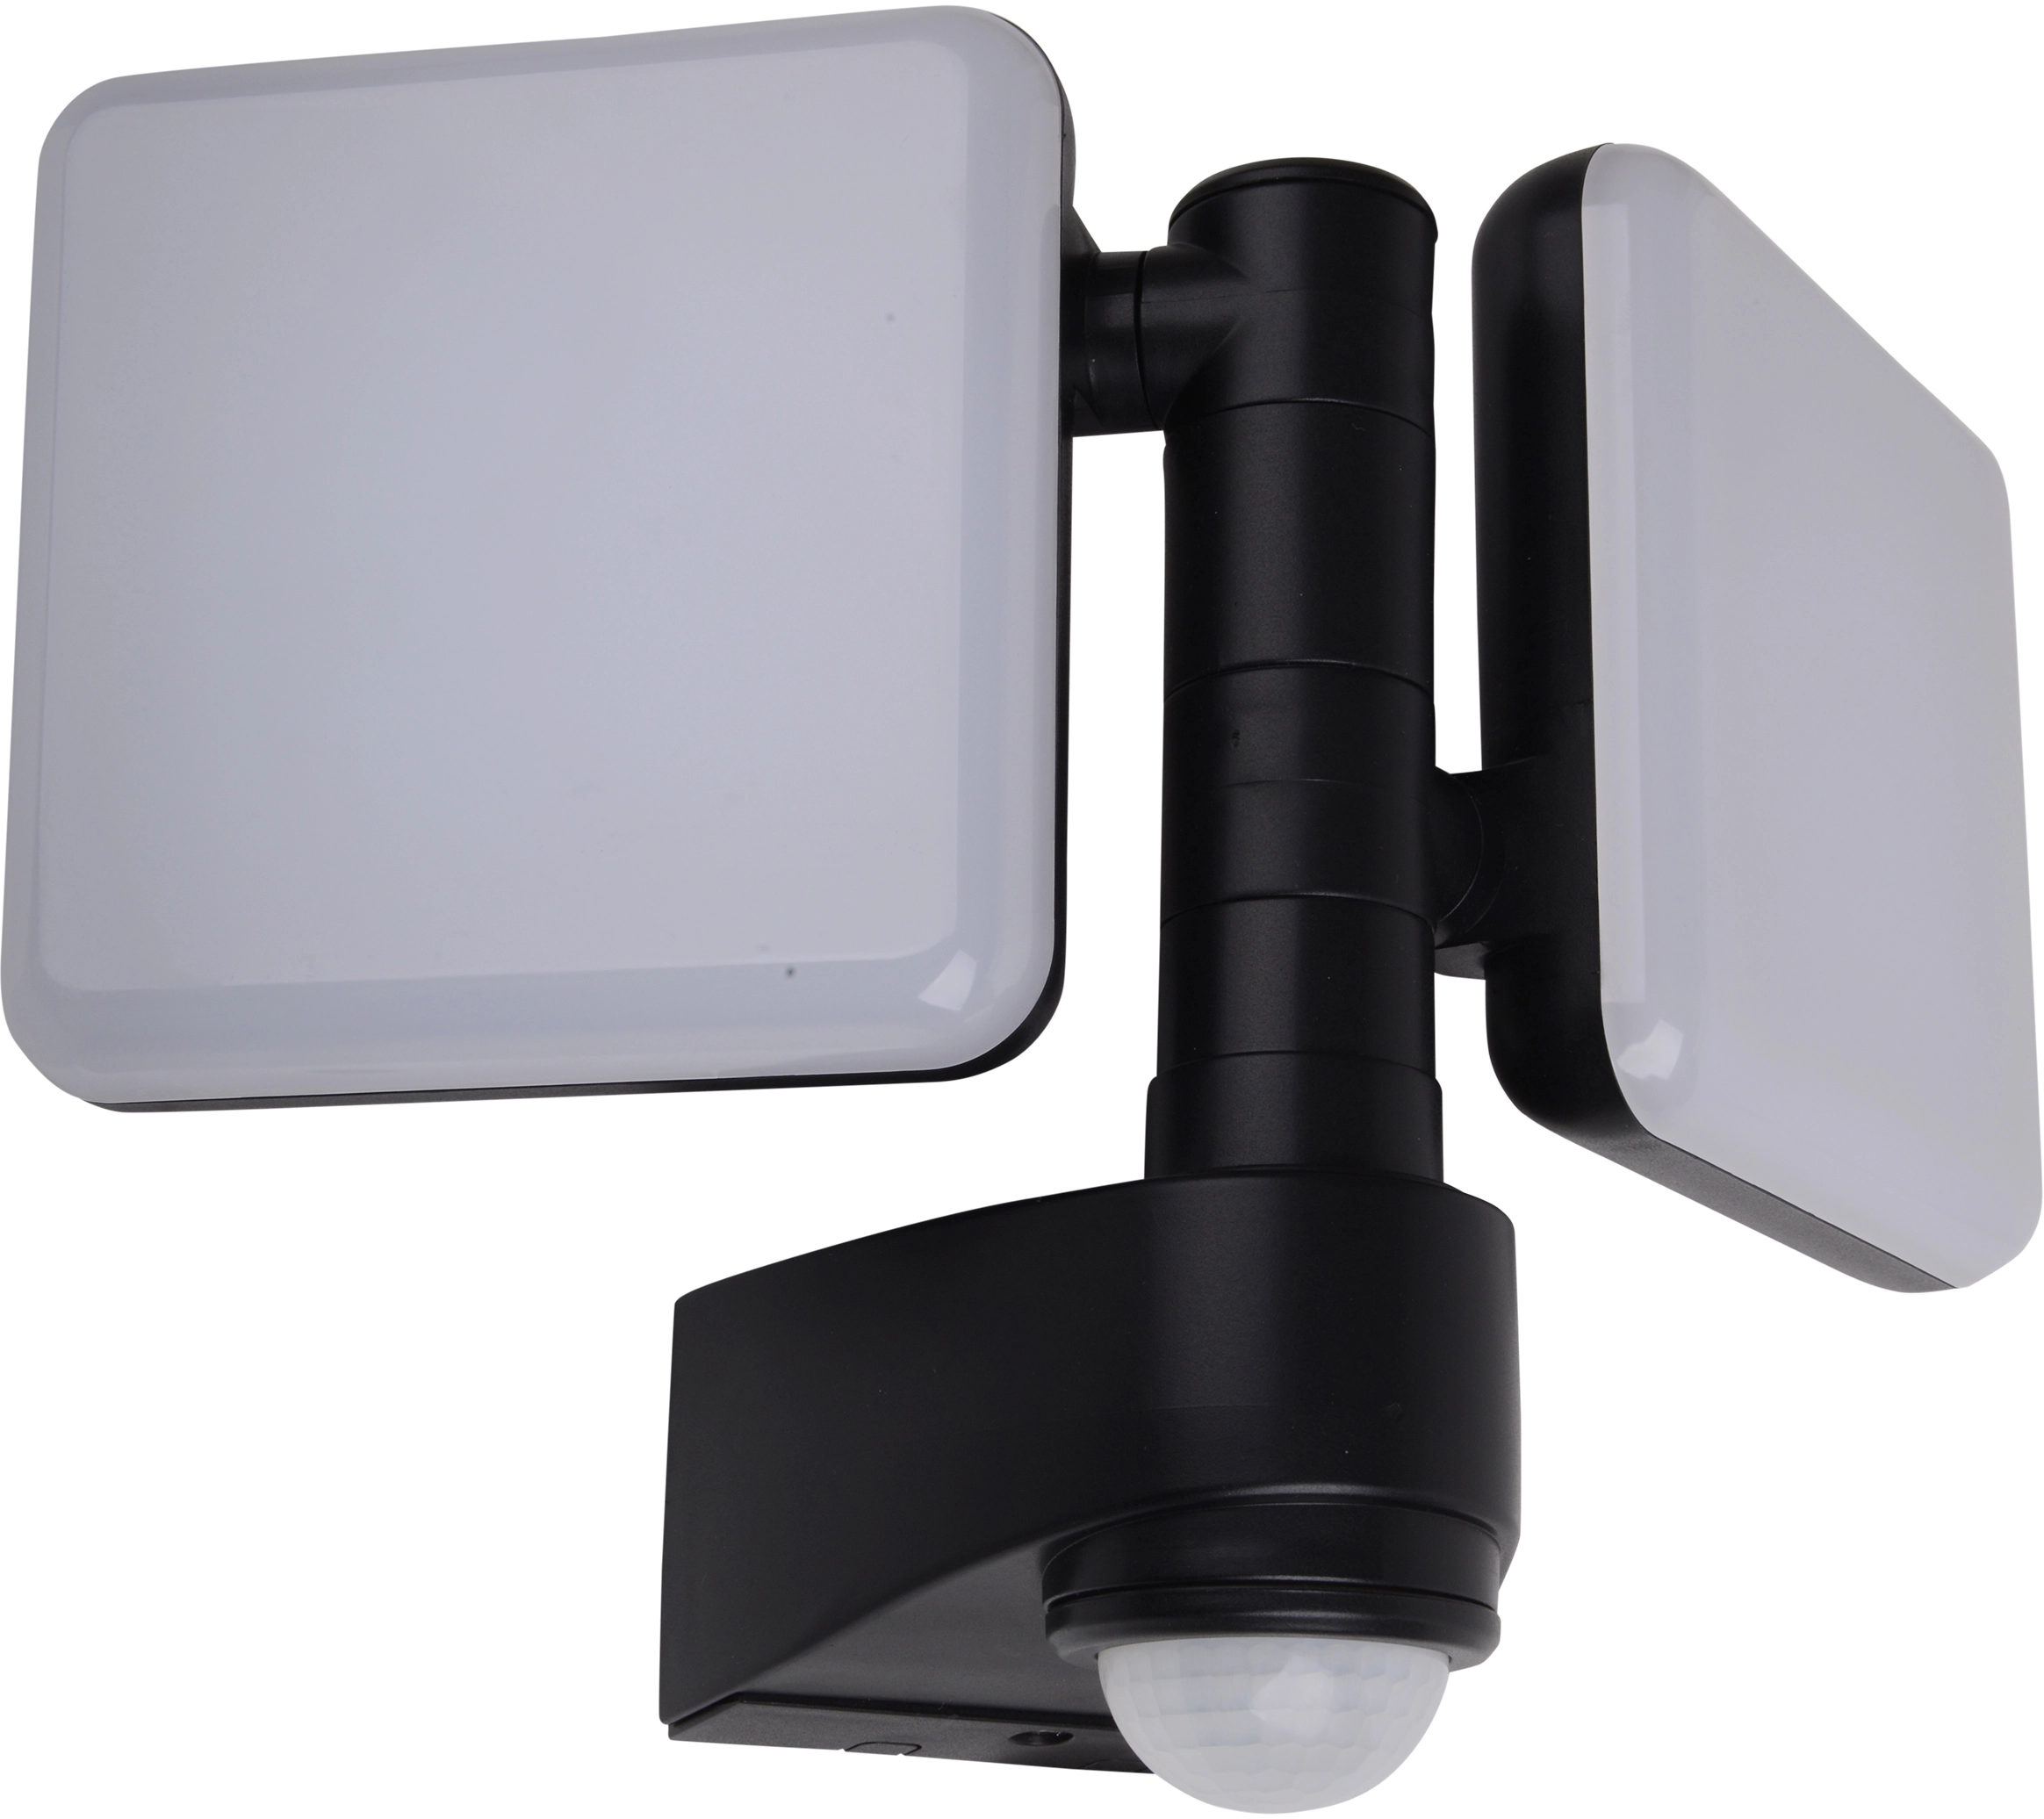 Näve LED-Wand-Außenleuchte Jaro II mit Bewegungsmelder Schwarz kaufen bei OBI 360°